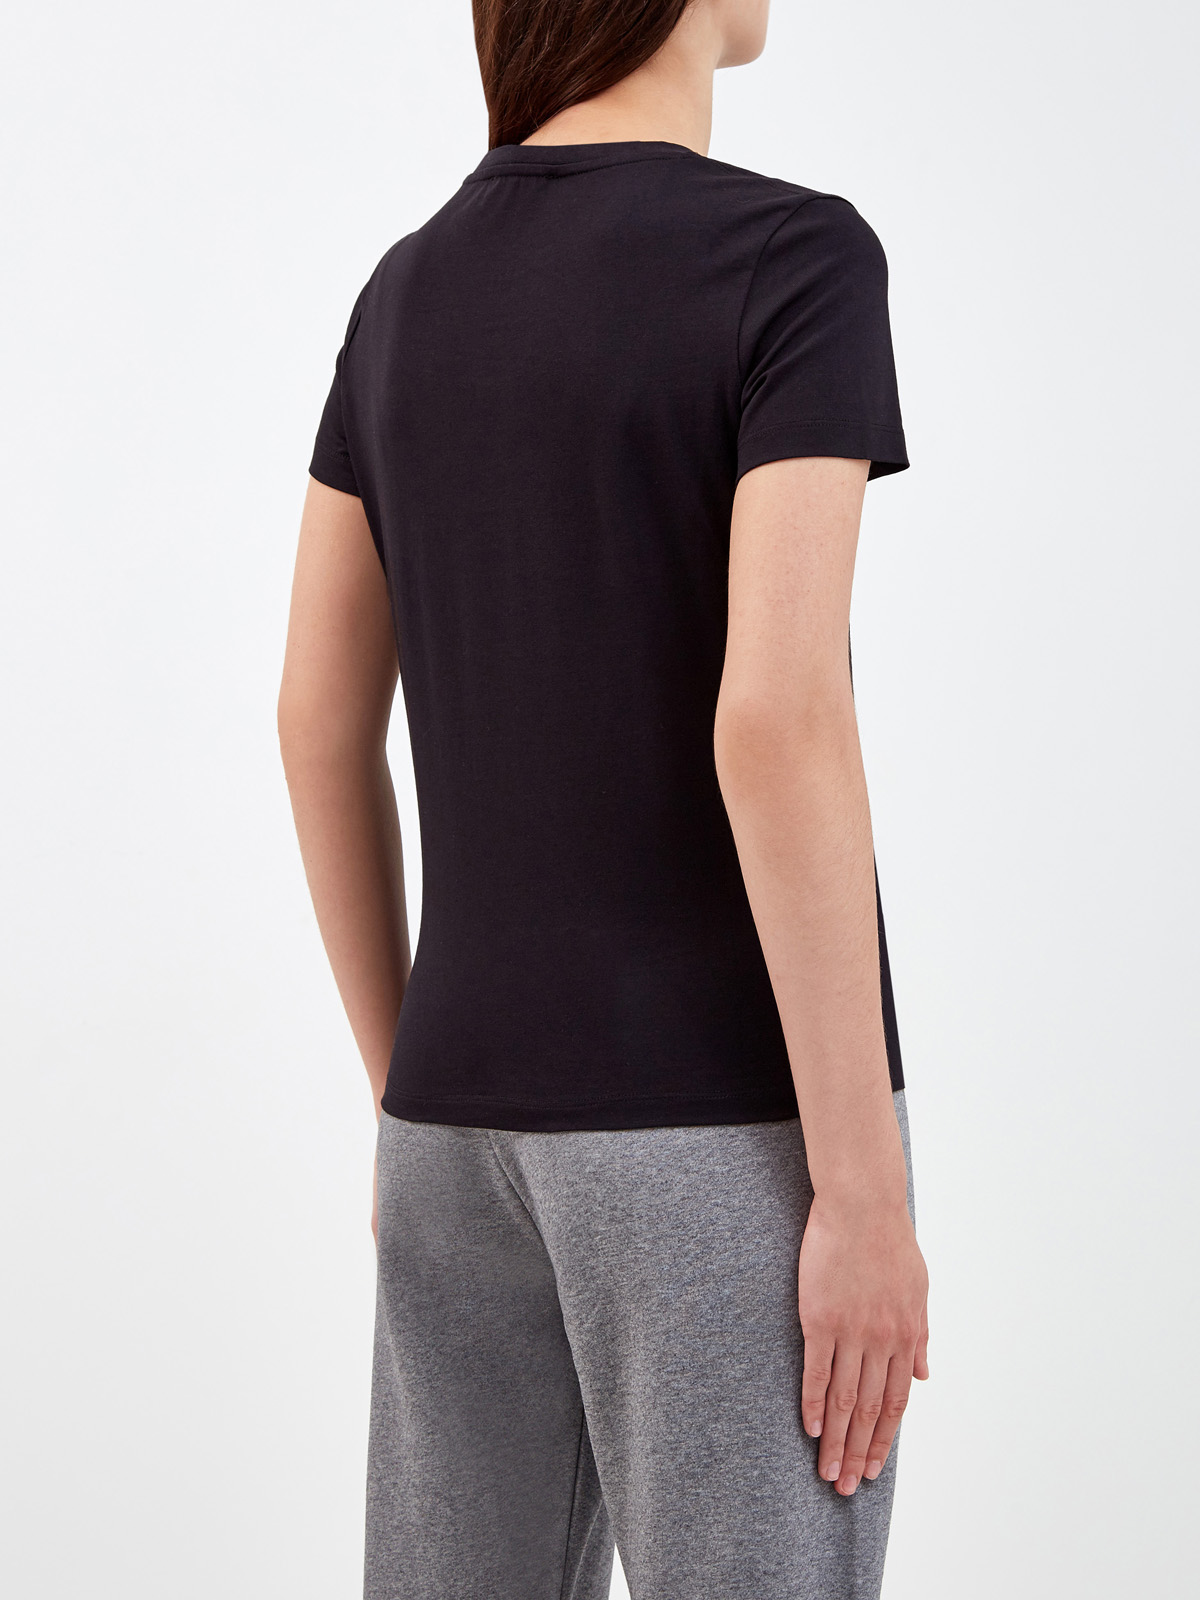 Хлопковая футболка из гладкого джерси с вышитой эмблемой бренда KENZO, цвет черный, размер S;L;XS - фото 4